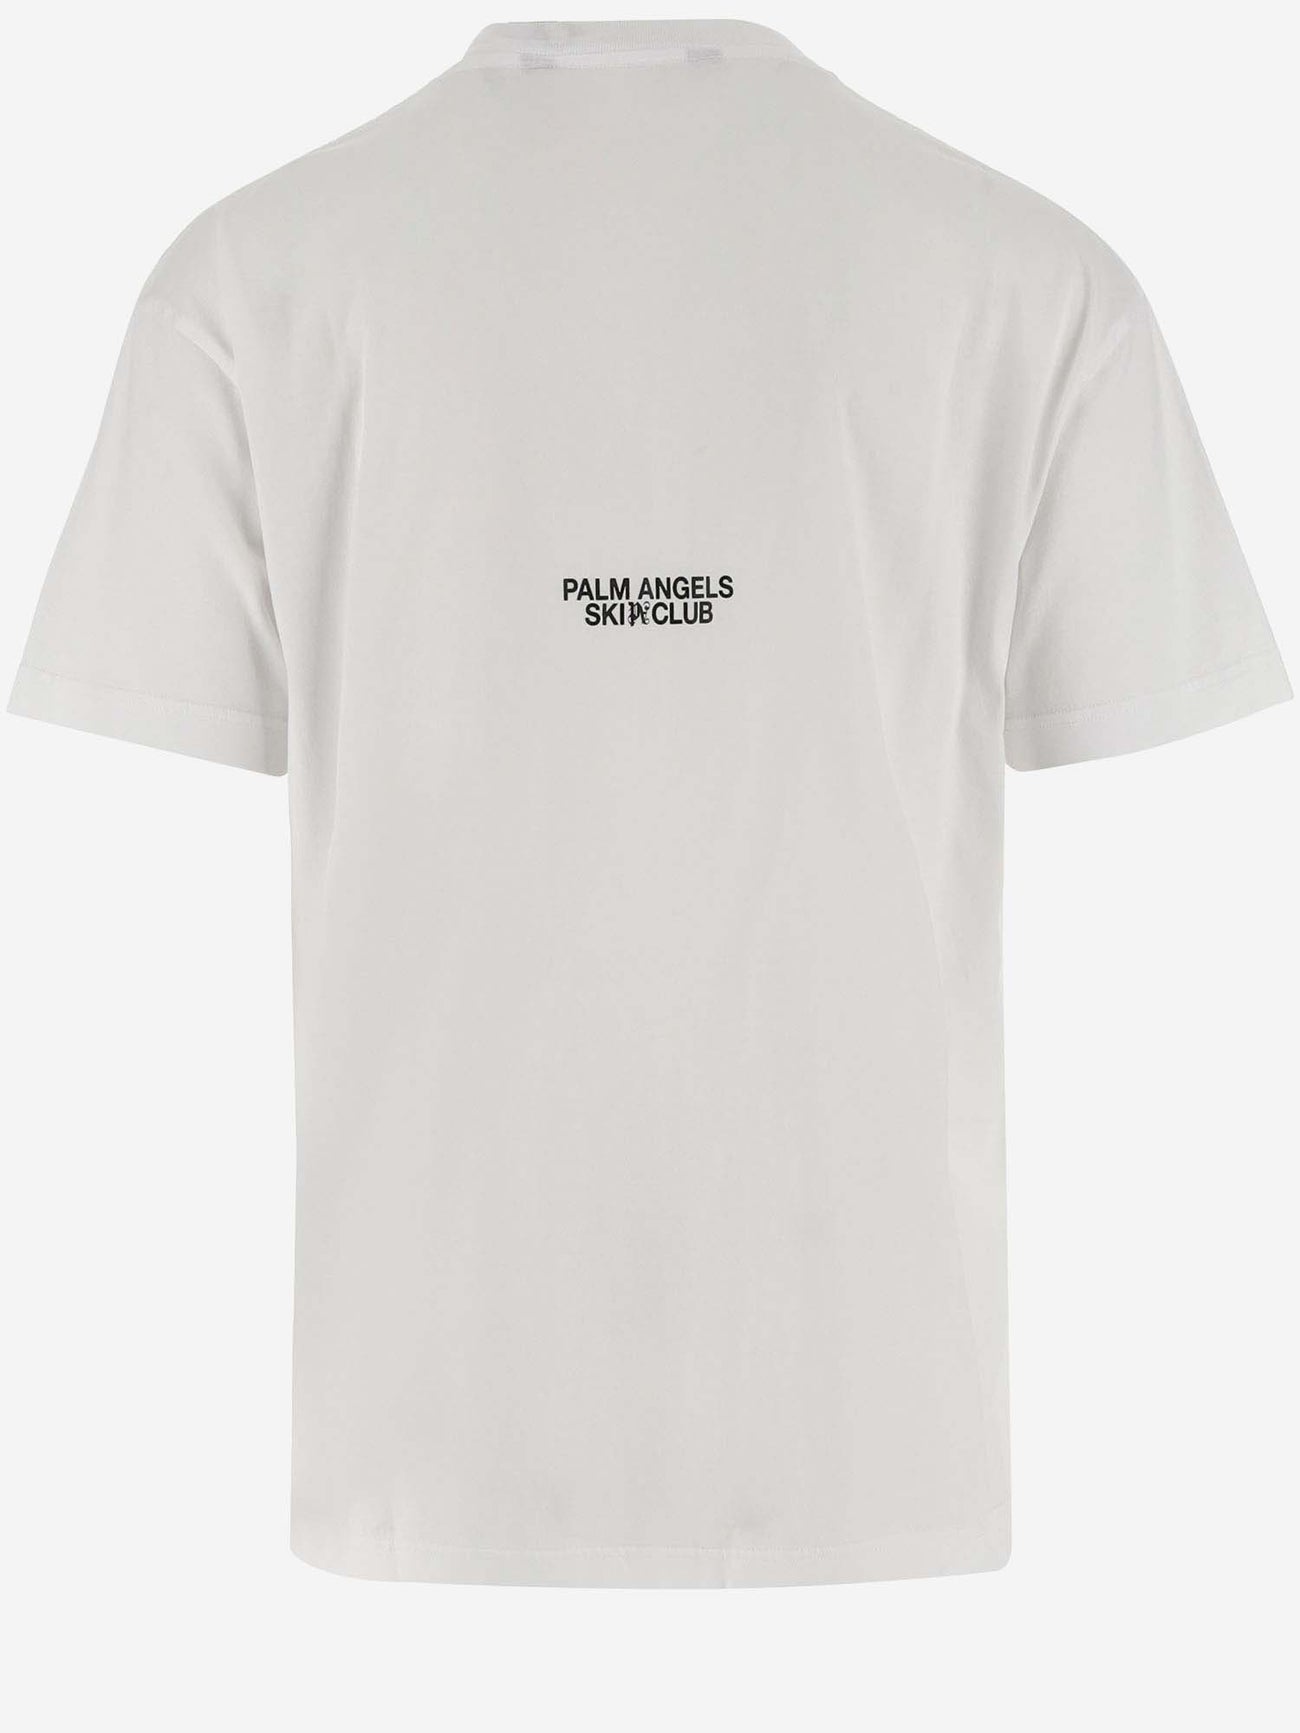 Palm Angels, Ski Club T-Shirt